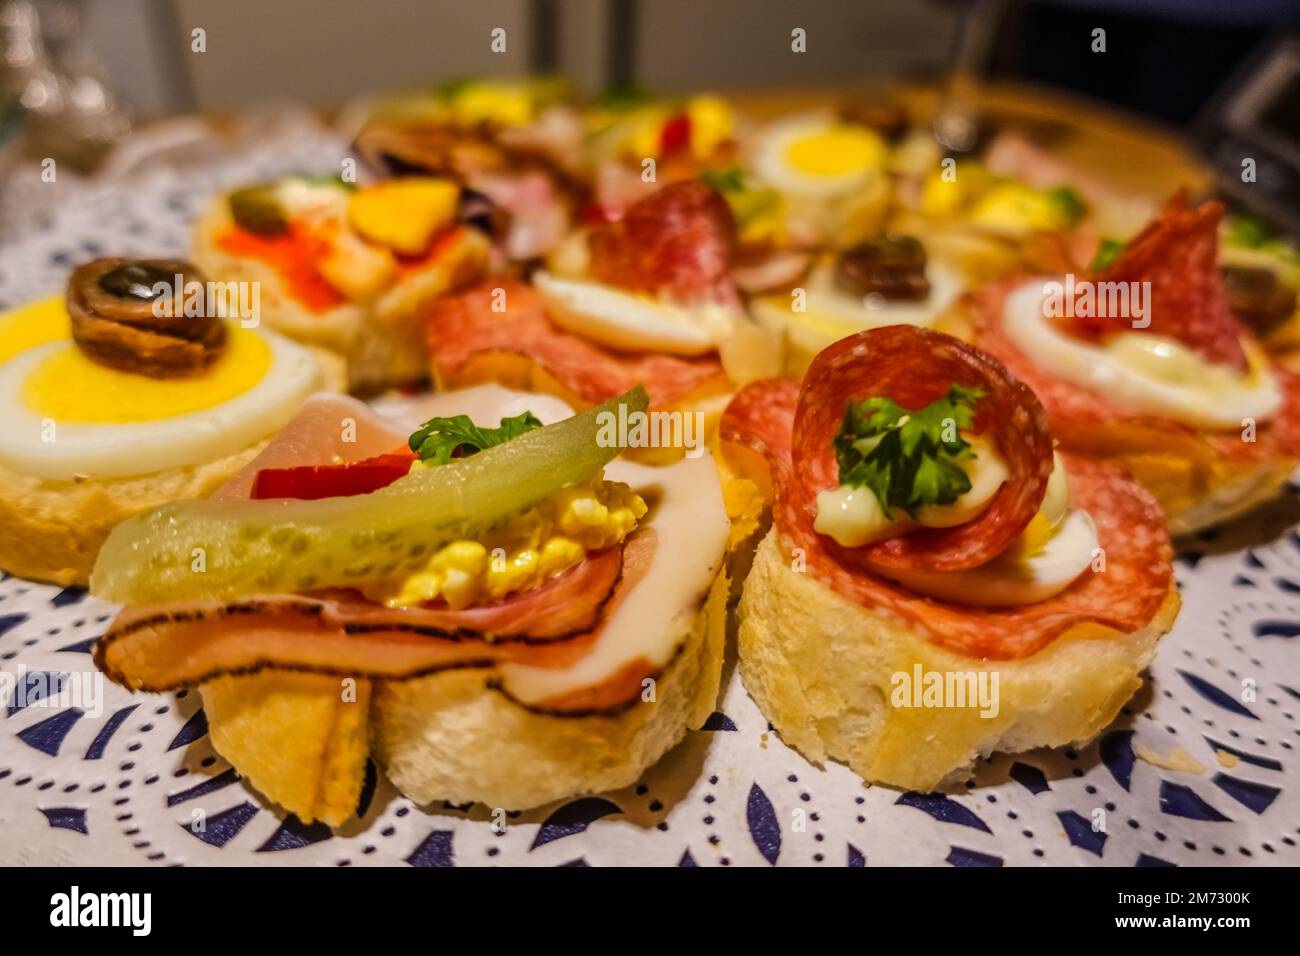 beaucoup de délicieux sandwichs différents dans une assiette à la fête de noël Banque D'Images